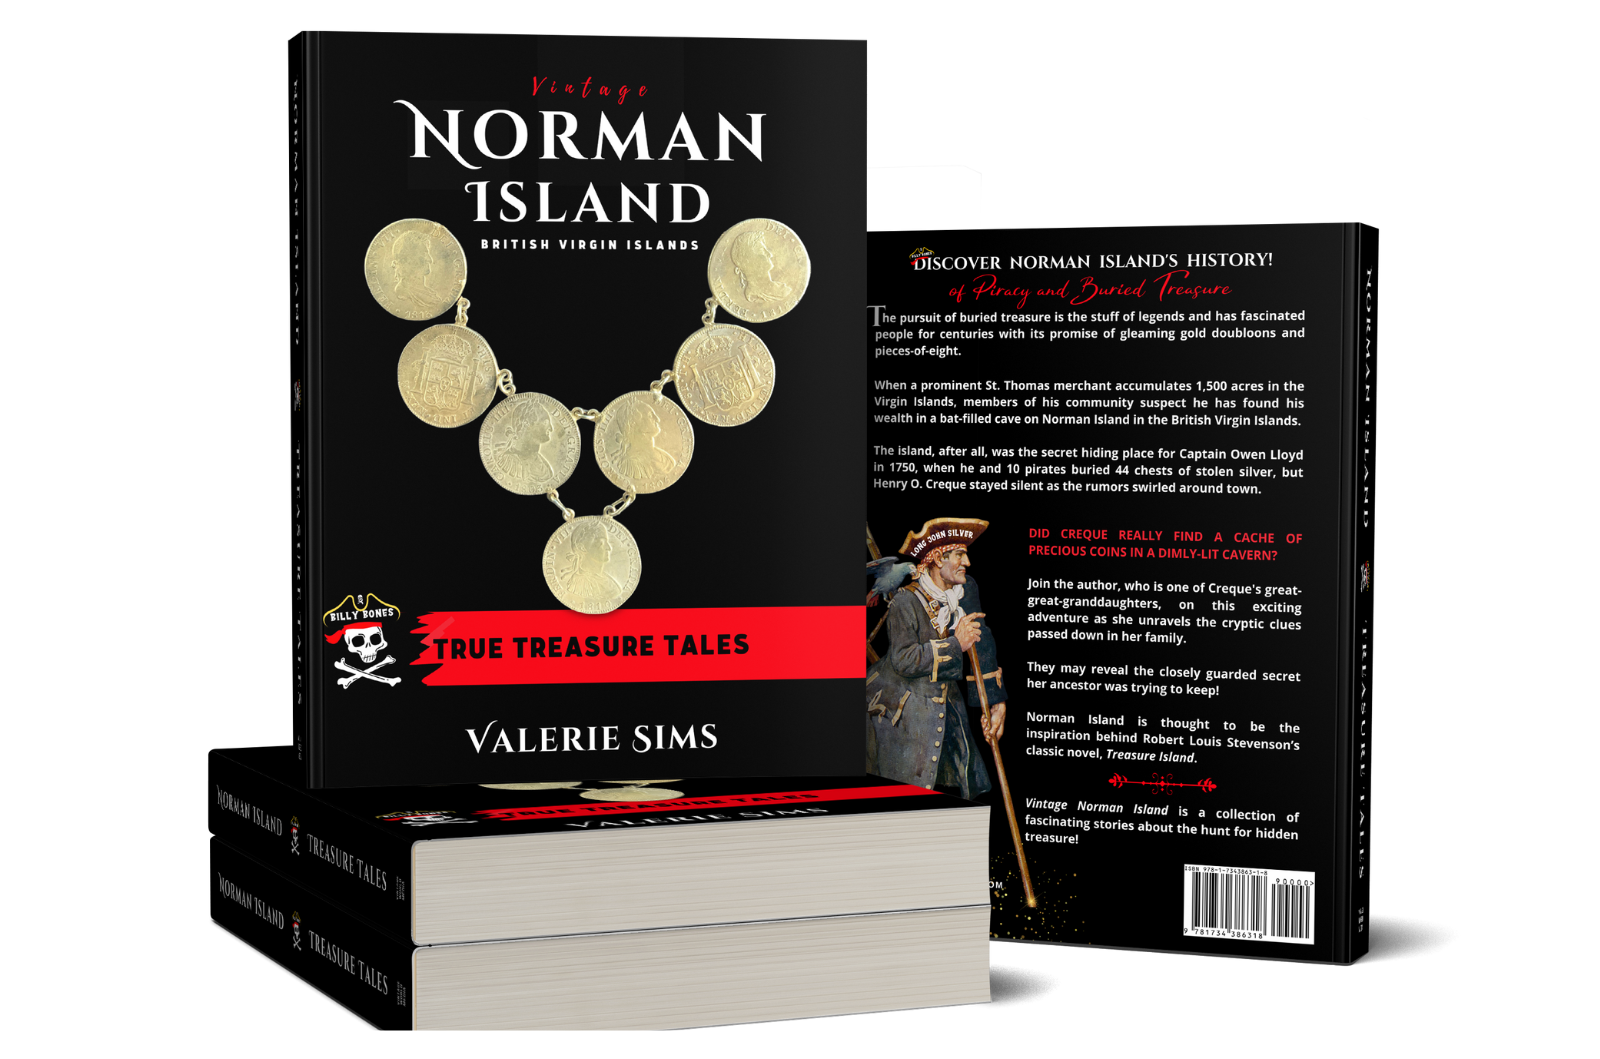 Vintage Norman Island book